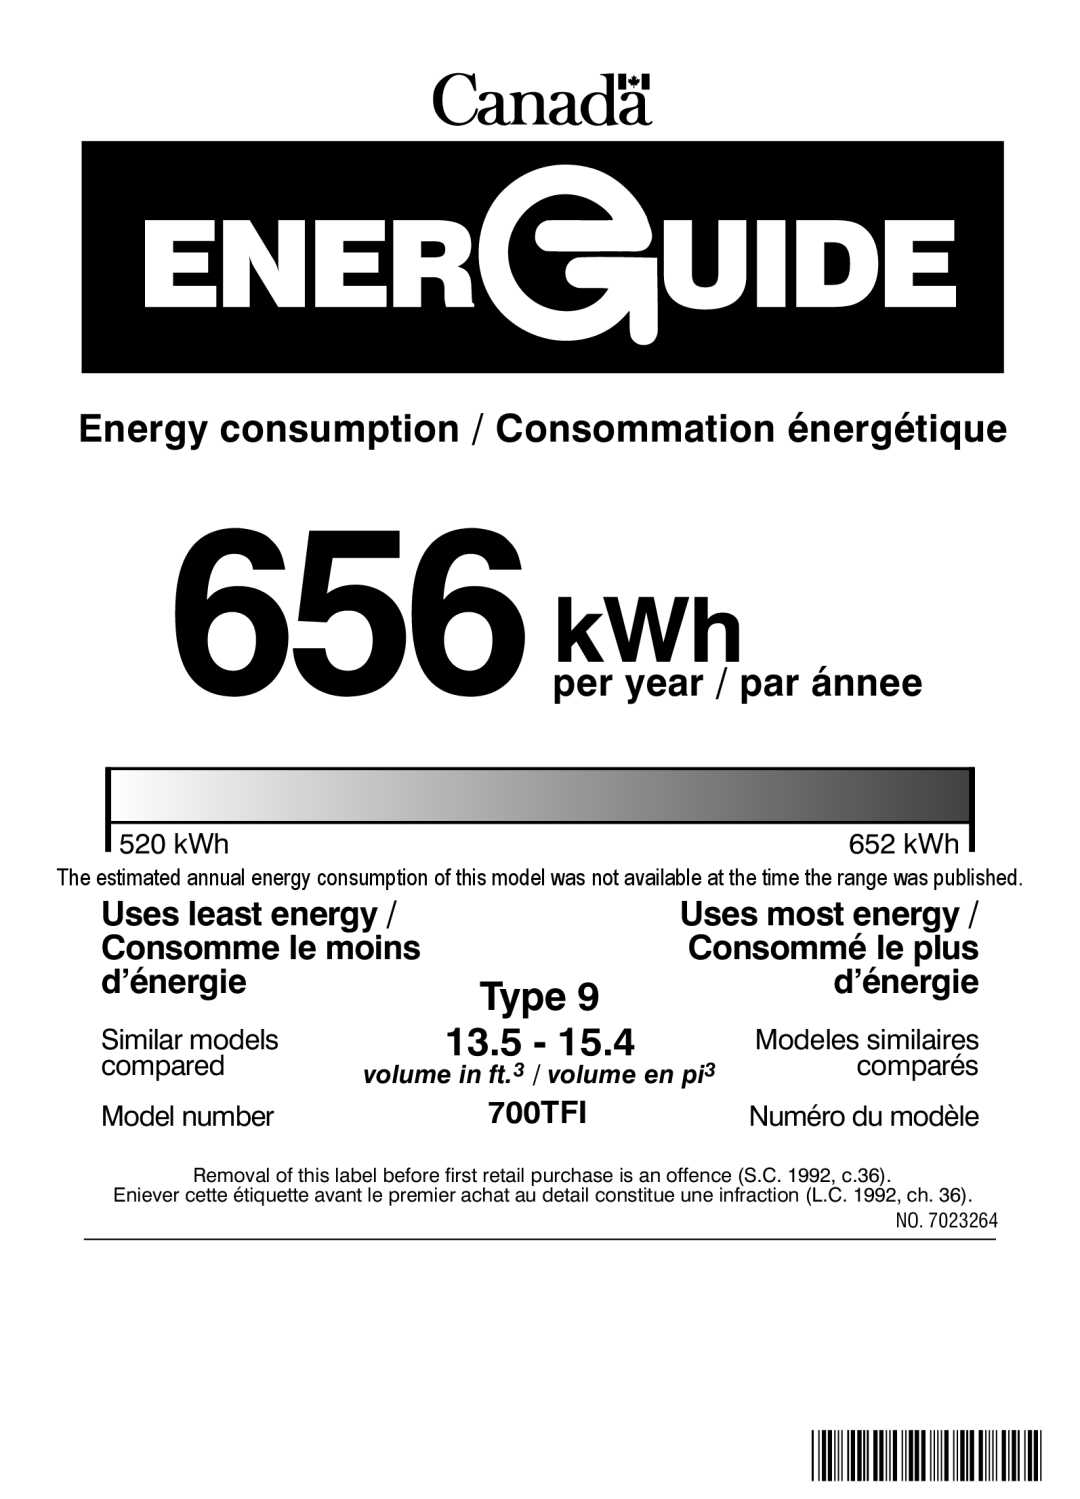 Sub-Zero 700TFI Uses least energy, Uses most energy, Consomme le moins, Consommé le plus, d’énergie, 656kWh, 13.5, Type 